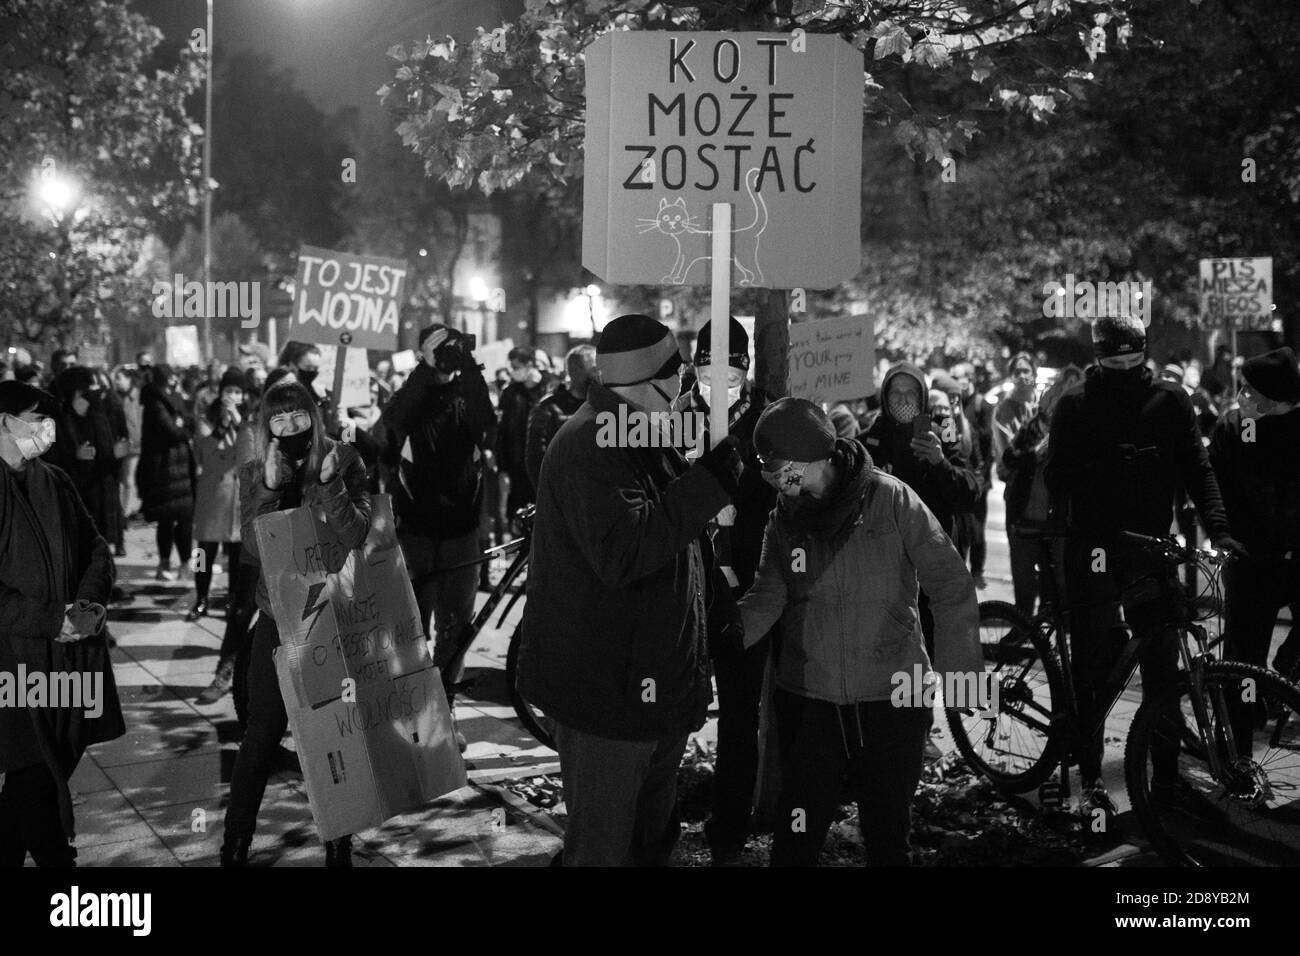 Poznan / Polonia - 11.01.2020: Manifestazione contro il divieto totale di aborto, le donne protestano contro le restrizioni ai diritti delle donne. Foto Stock